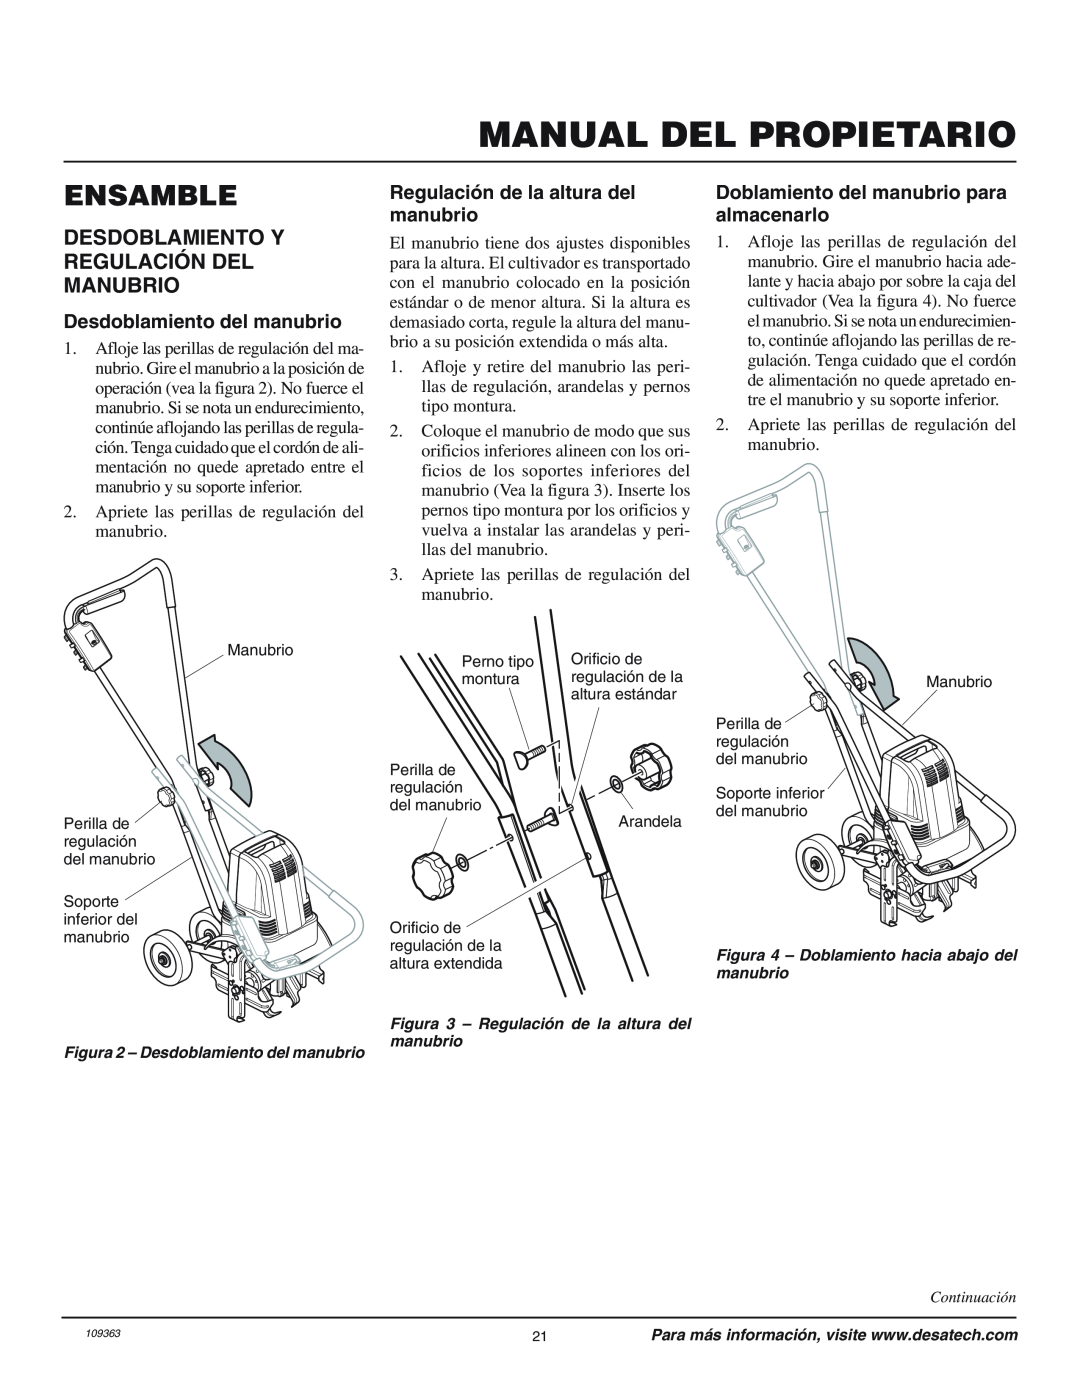 Remington 109312-01 owner manual Ensamble, Desdoblamiento Y Regulación Del Manubrio, Desdoblamiento del manubrio 